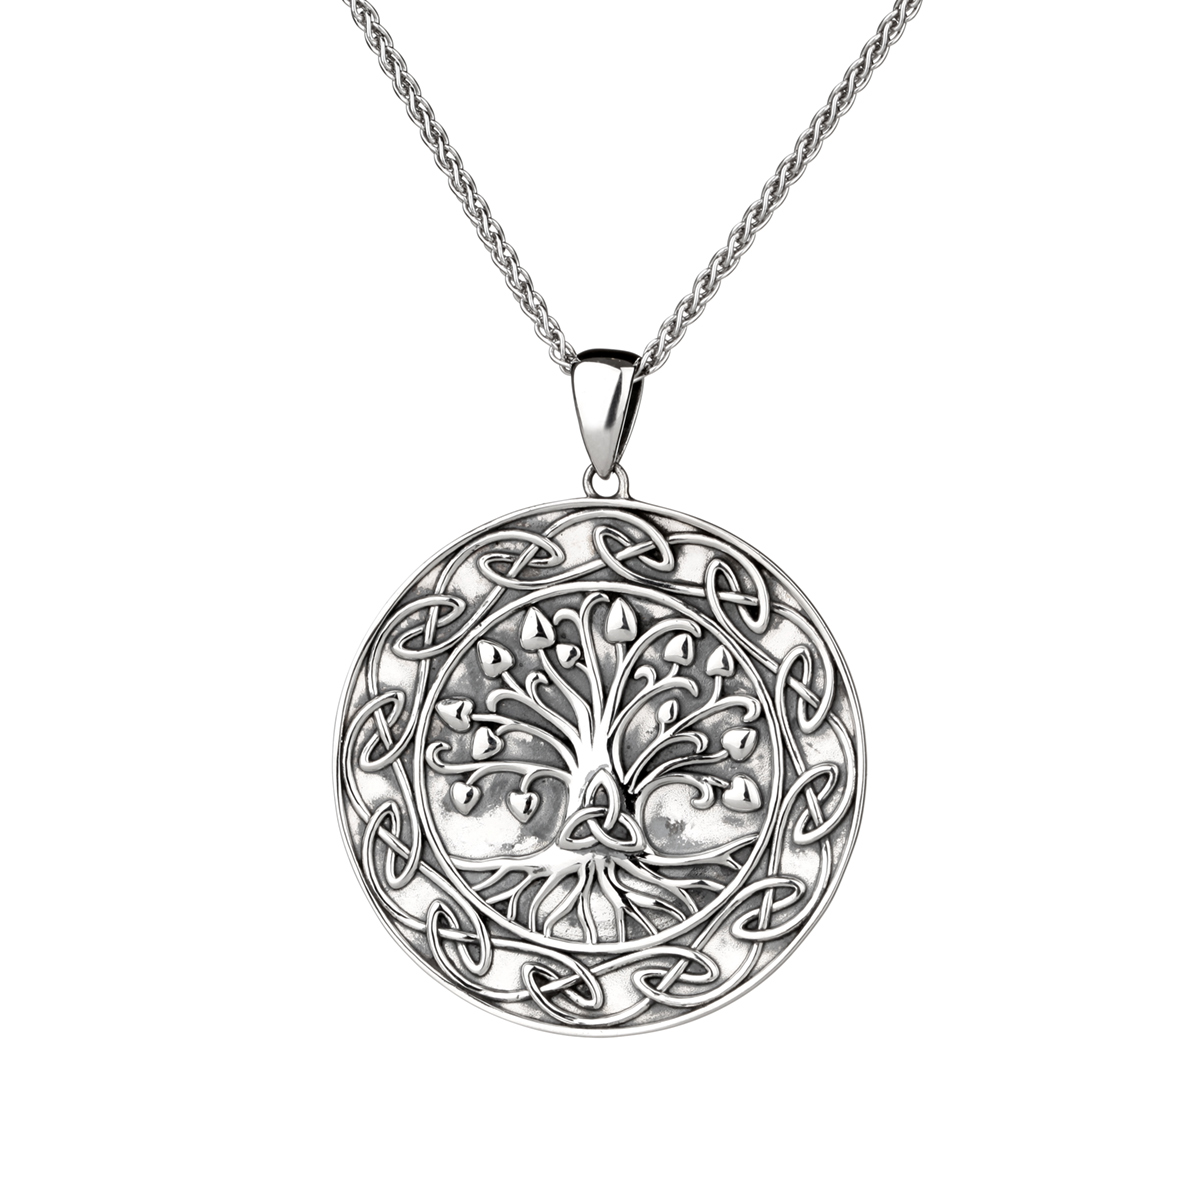 Lebensbaum Medaillon aus Irland - Sterling Silber mit keltischen Ornamenten